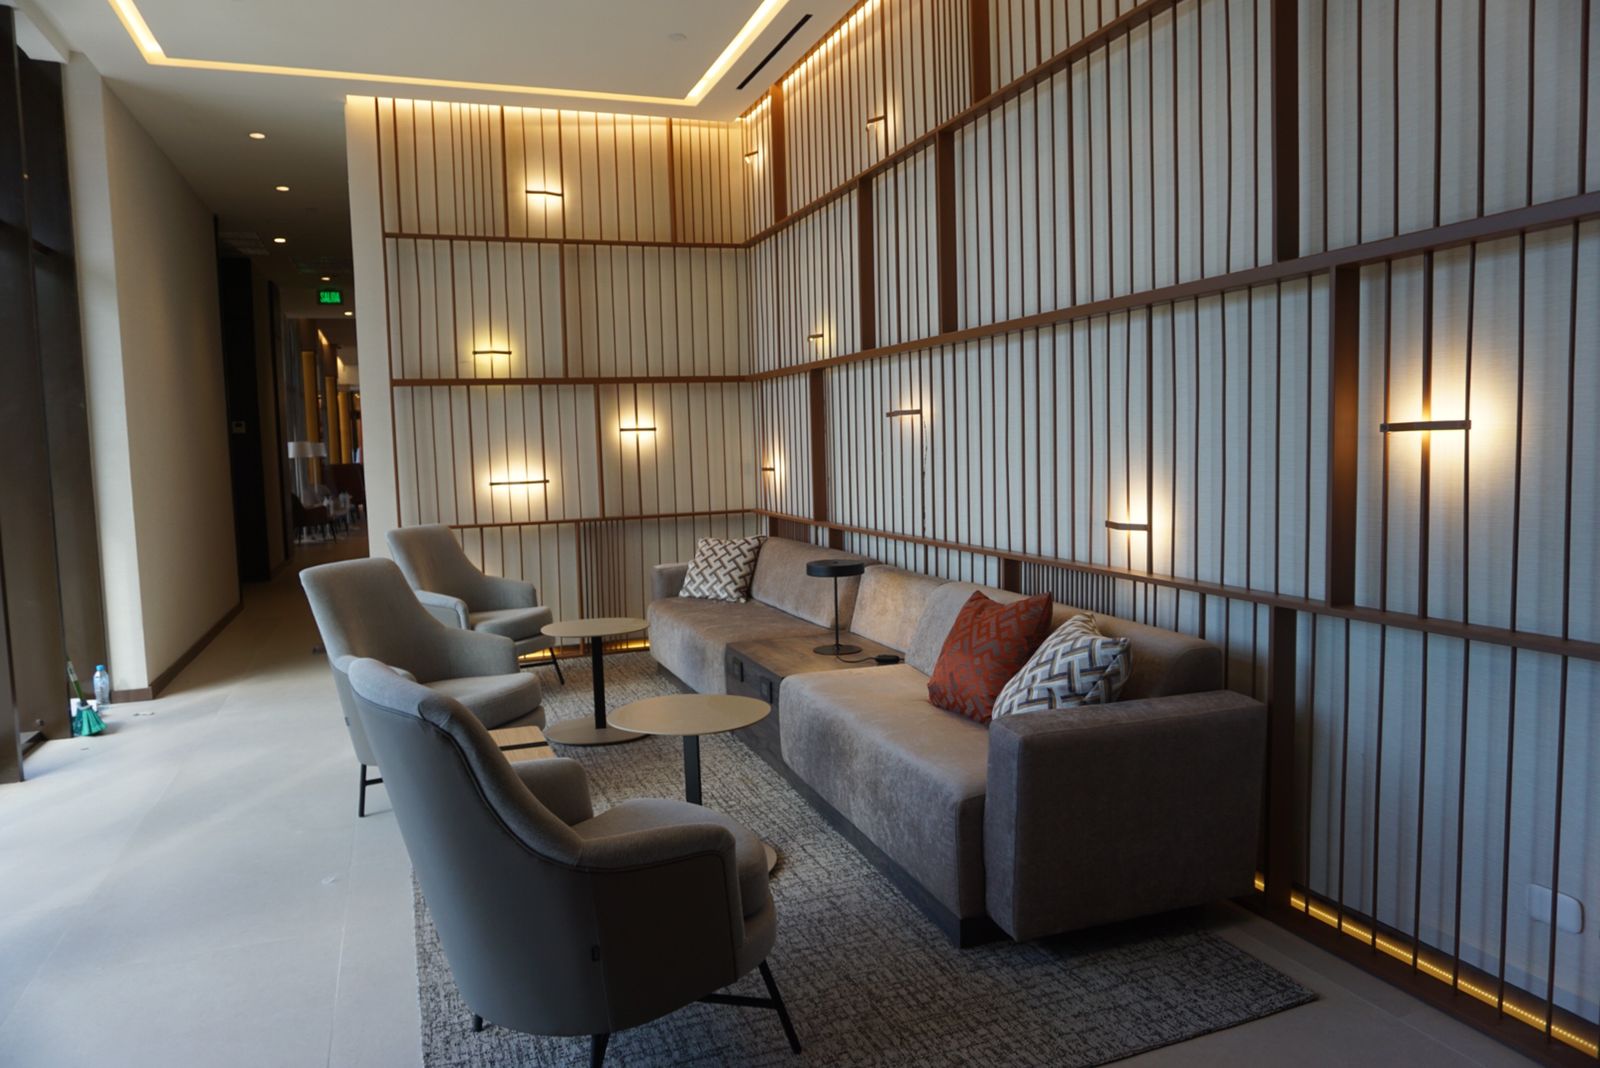 Sala de estar común del hotel, con diseño moderno y muebles grises.